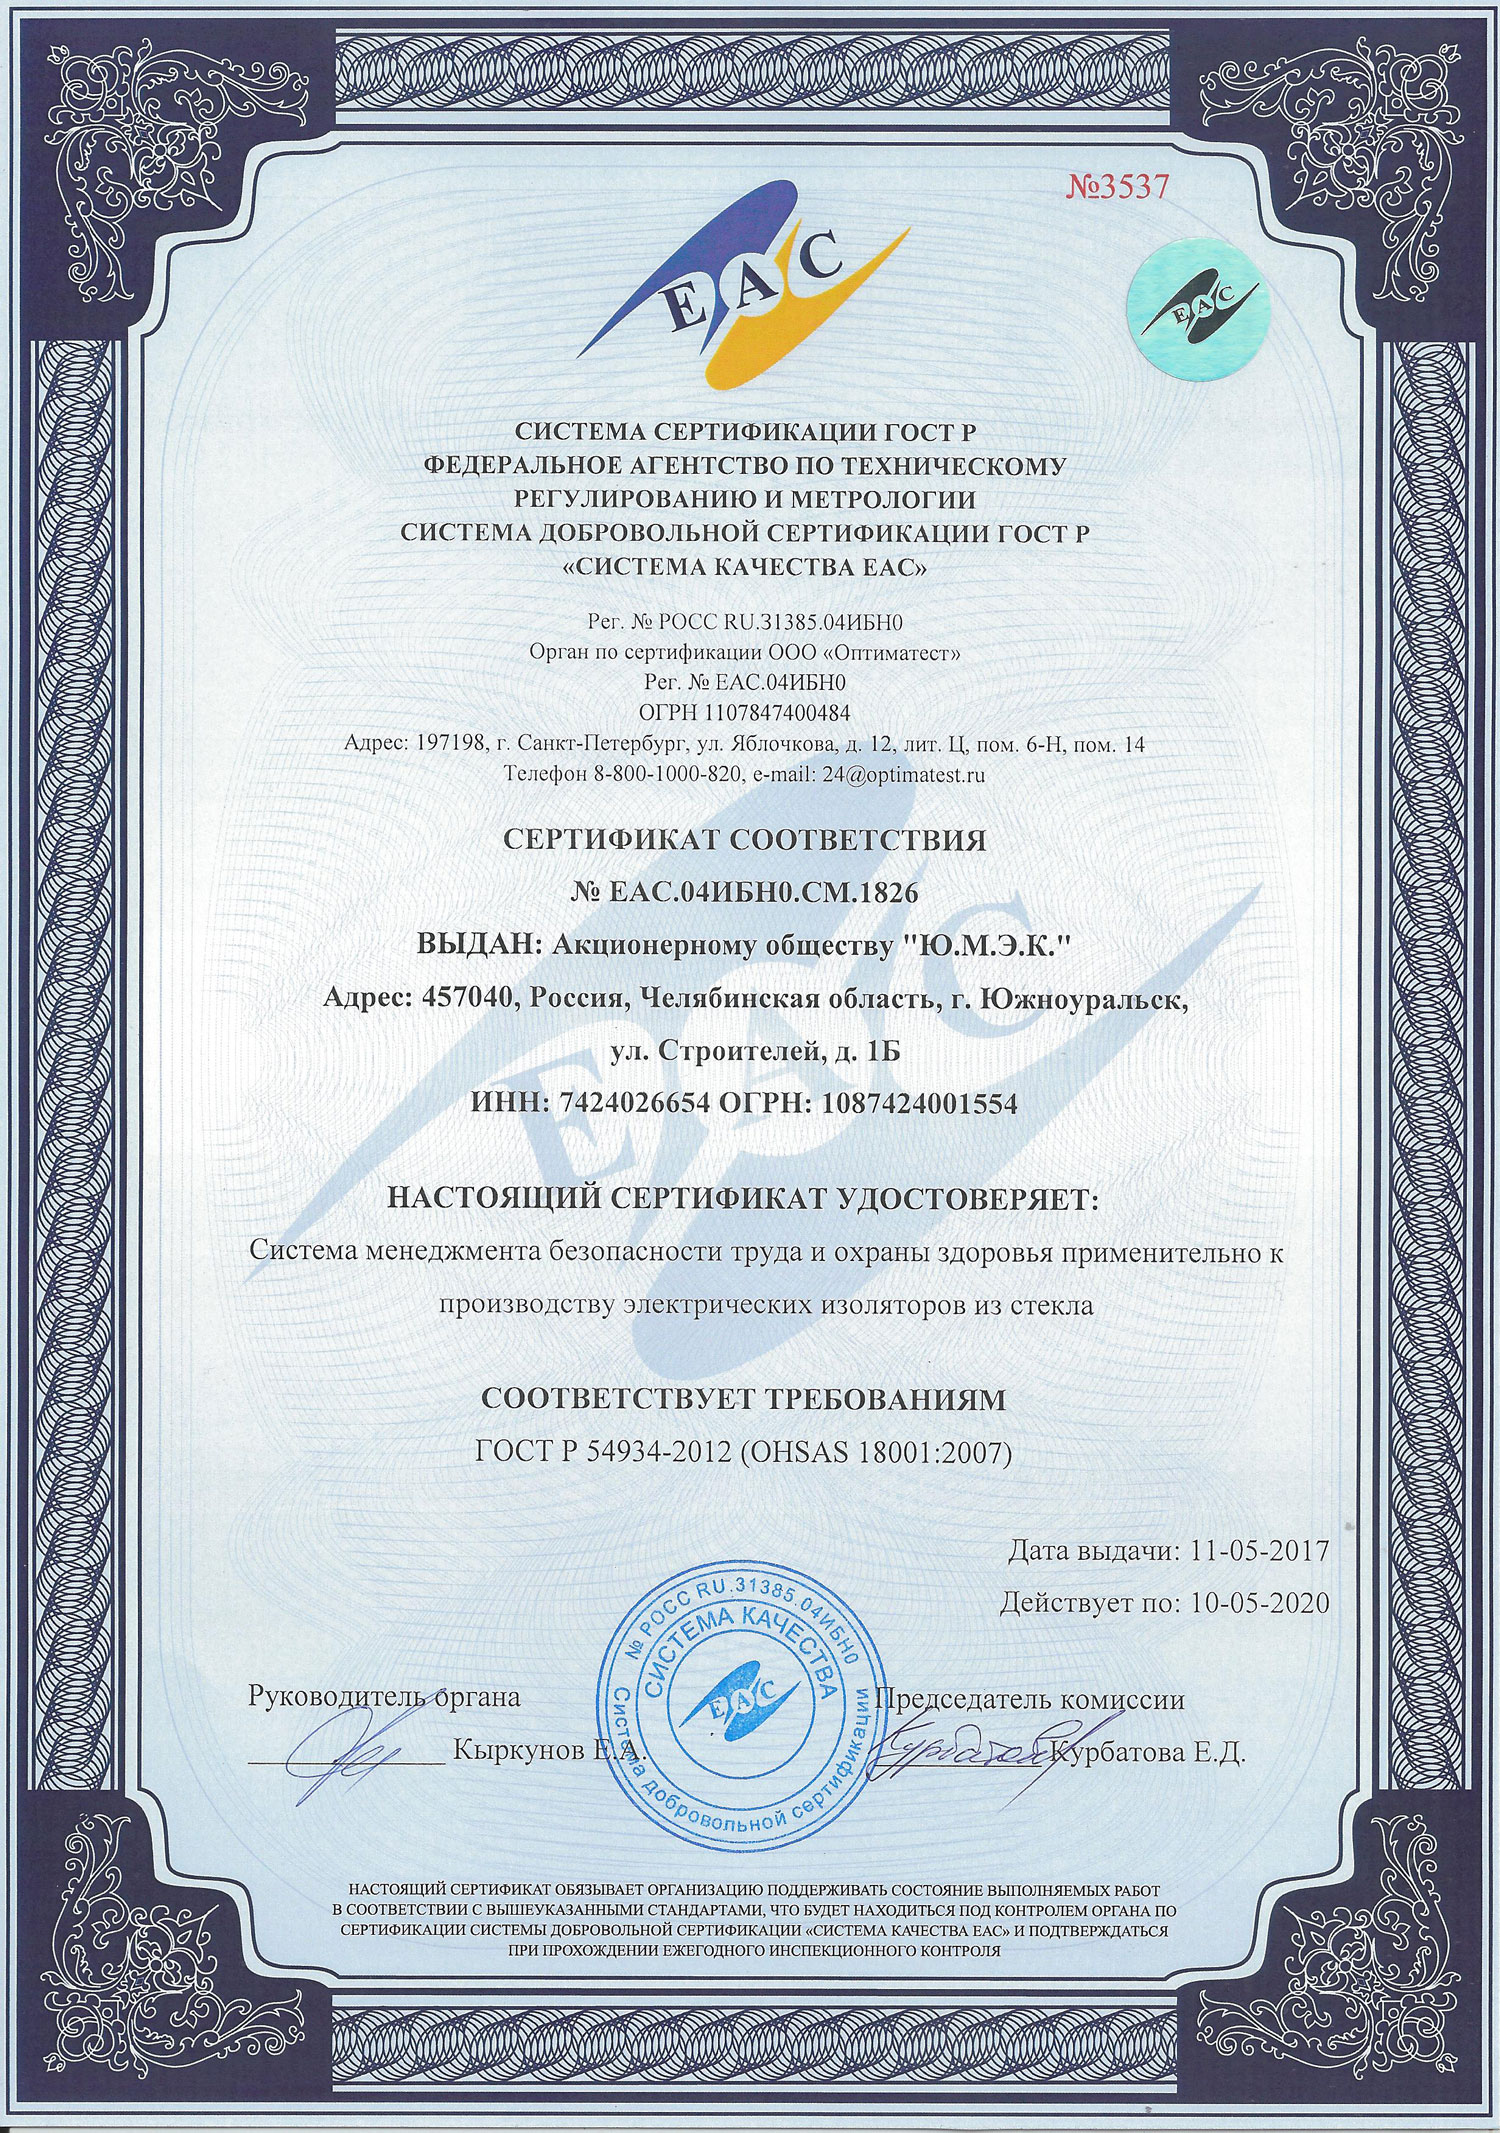 OHSAS 18001 2007 sertifikat sootvetsvija 2017 2020